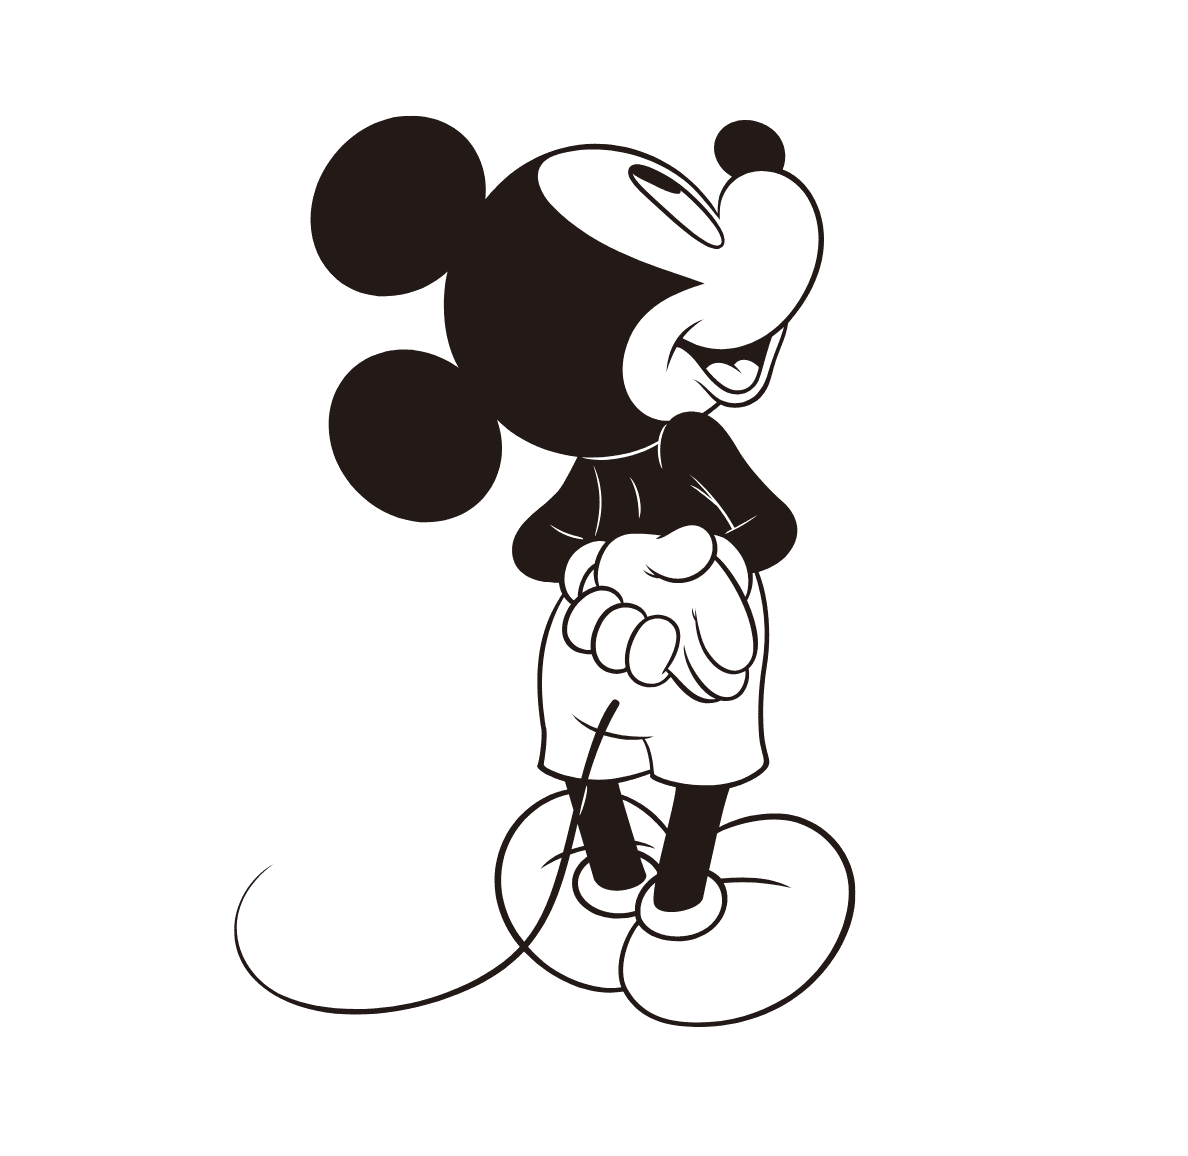 Un GIF animé de Mickey Mouse qui regarde au loin vers le haut, puis qui se retourne pour danser de manière enjouée.